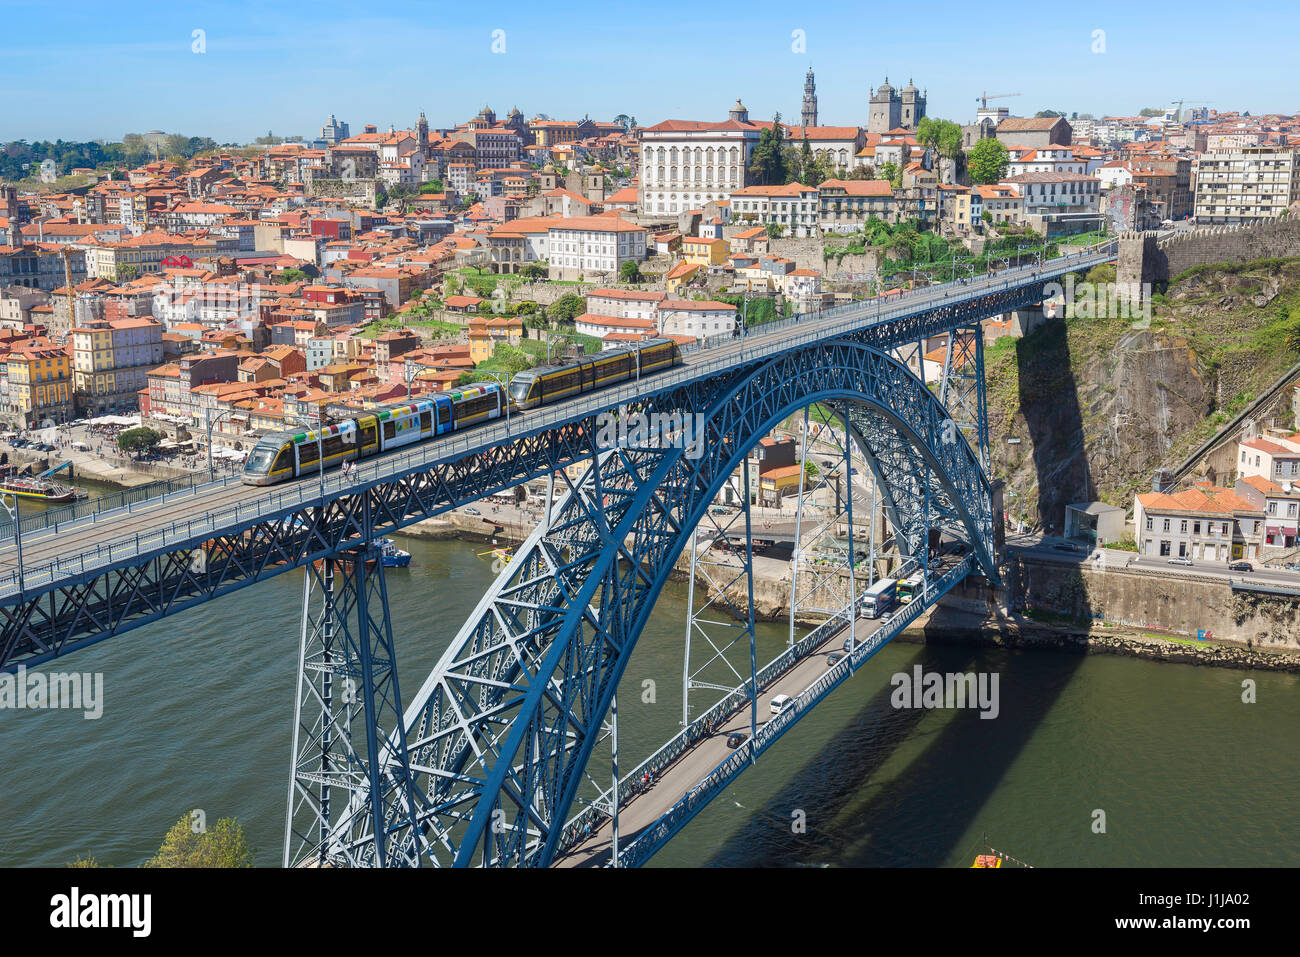 Brücke Porto Portugal, Blick auf eine U-Bahn auf der oberen Ebene der Brücke  Dom Luis, die den Fluss Douro überquert, Zentrum von Porto (Porto),  Portugal Stockfotografie - Alamy